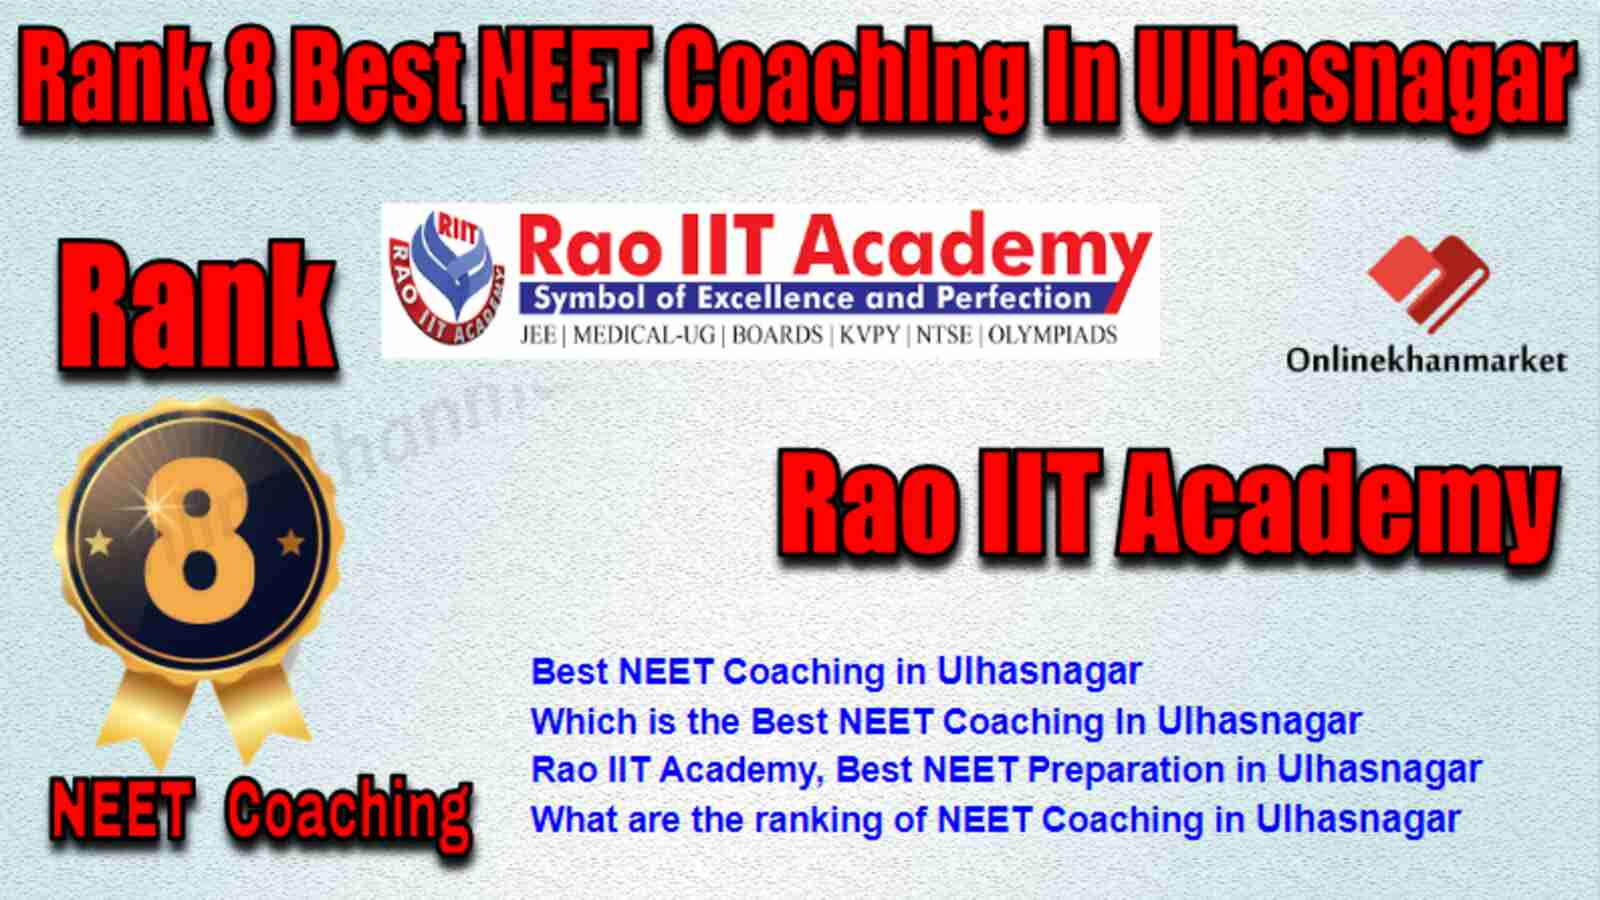 Rank 8 Best NEET Coaching in Ulhasnagar